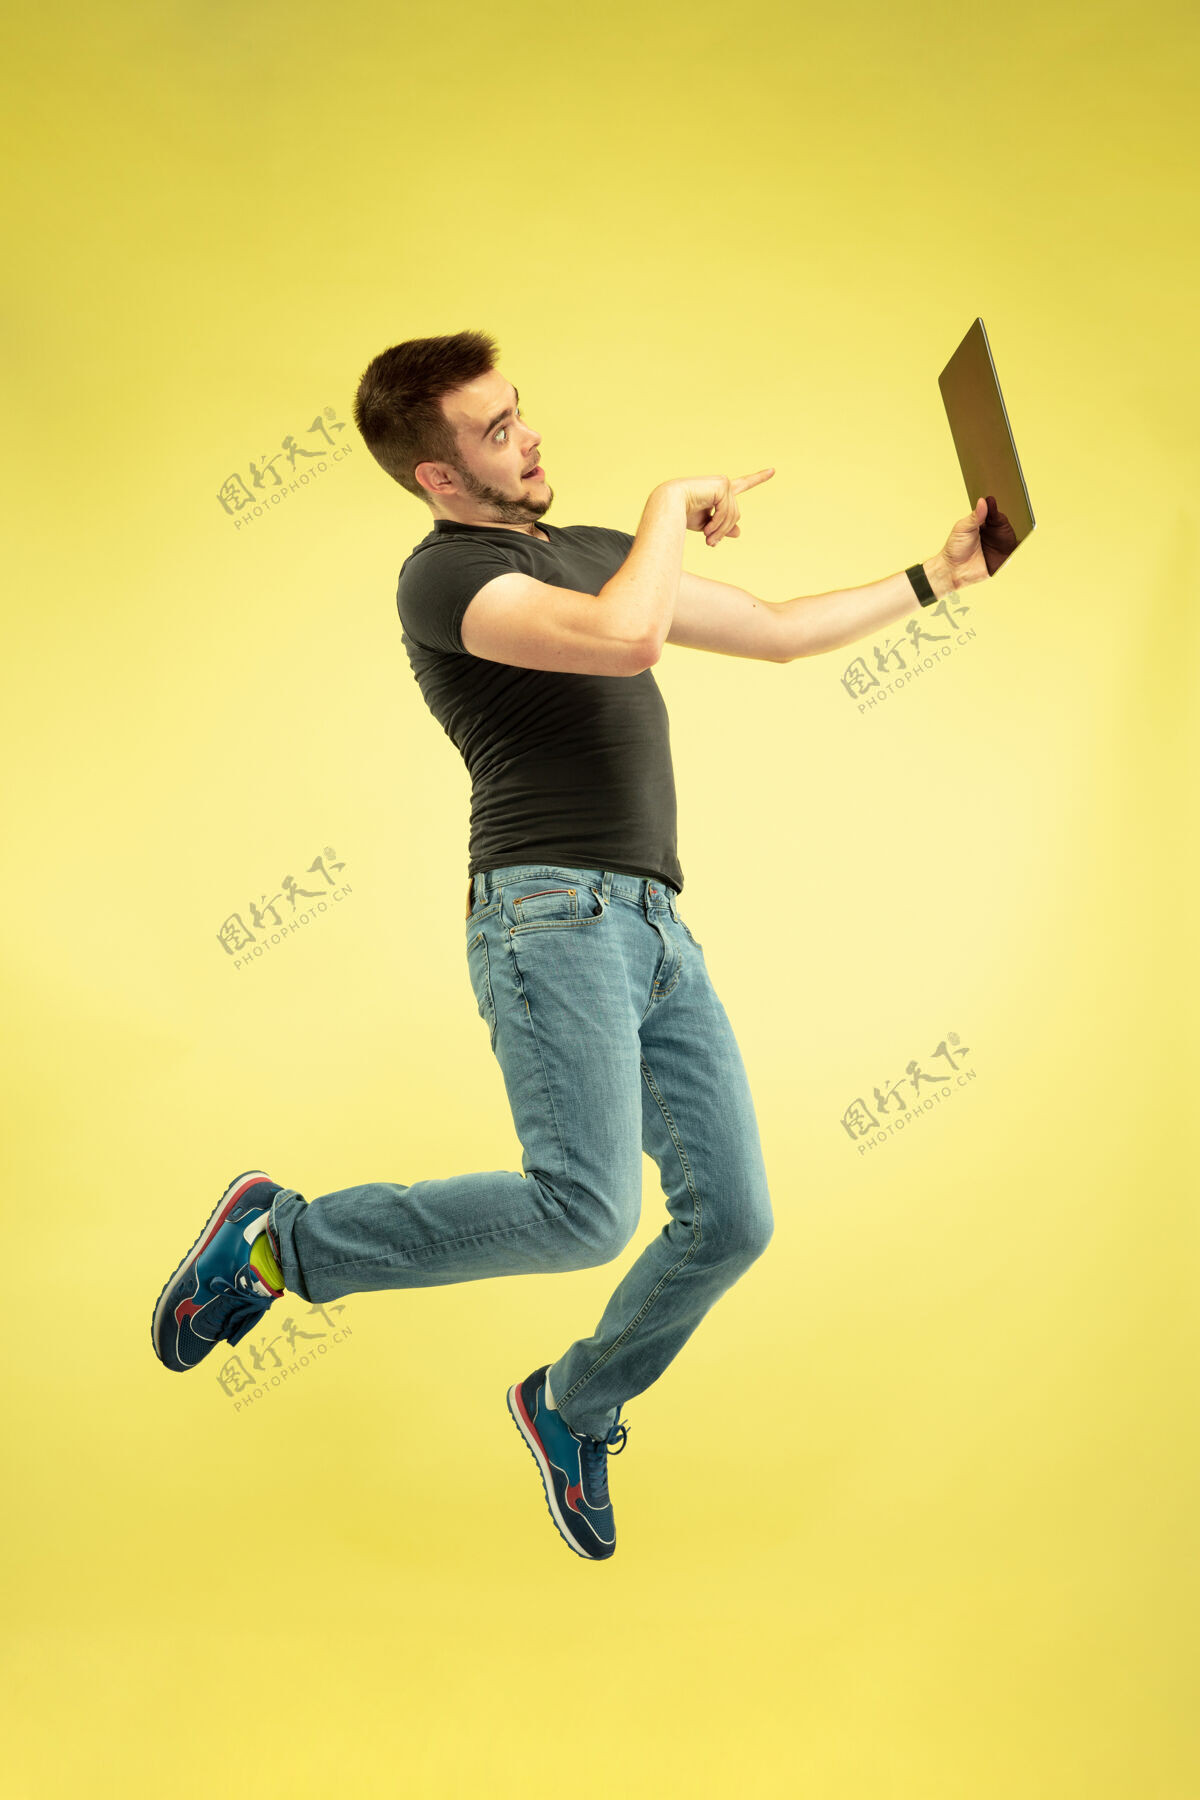 显示失重全长的快乐跳跃的人与黄色背景上孤立的小玩意画像电话笔记本电脑设备